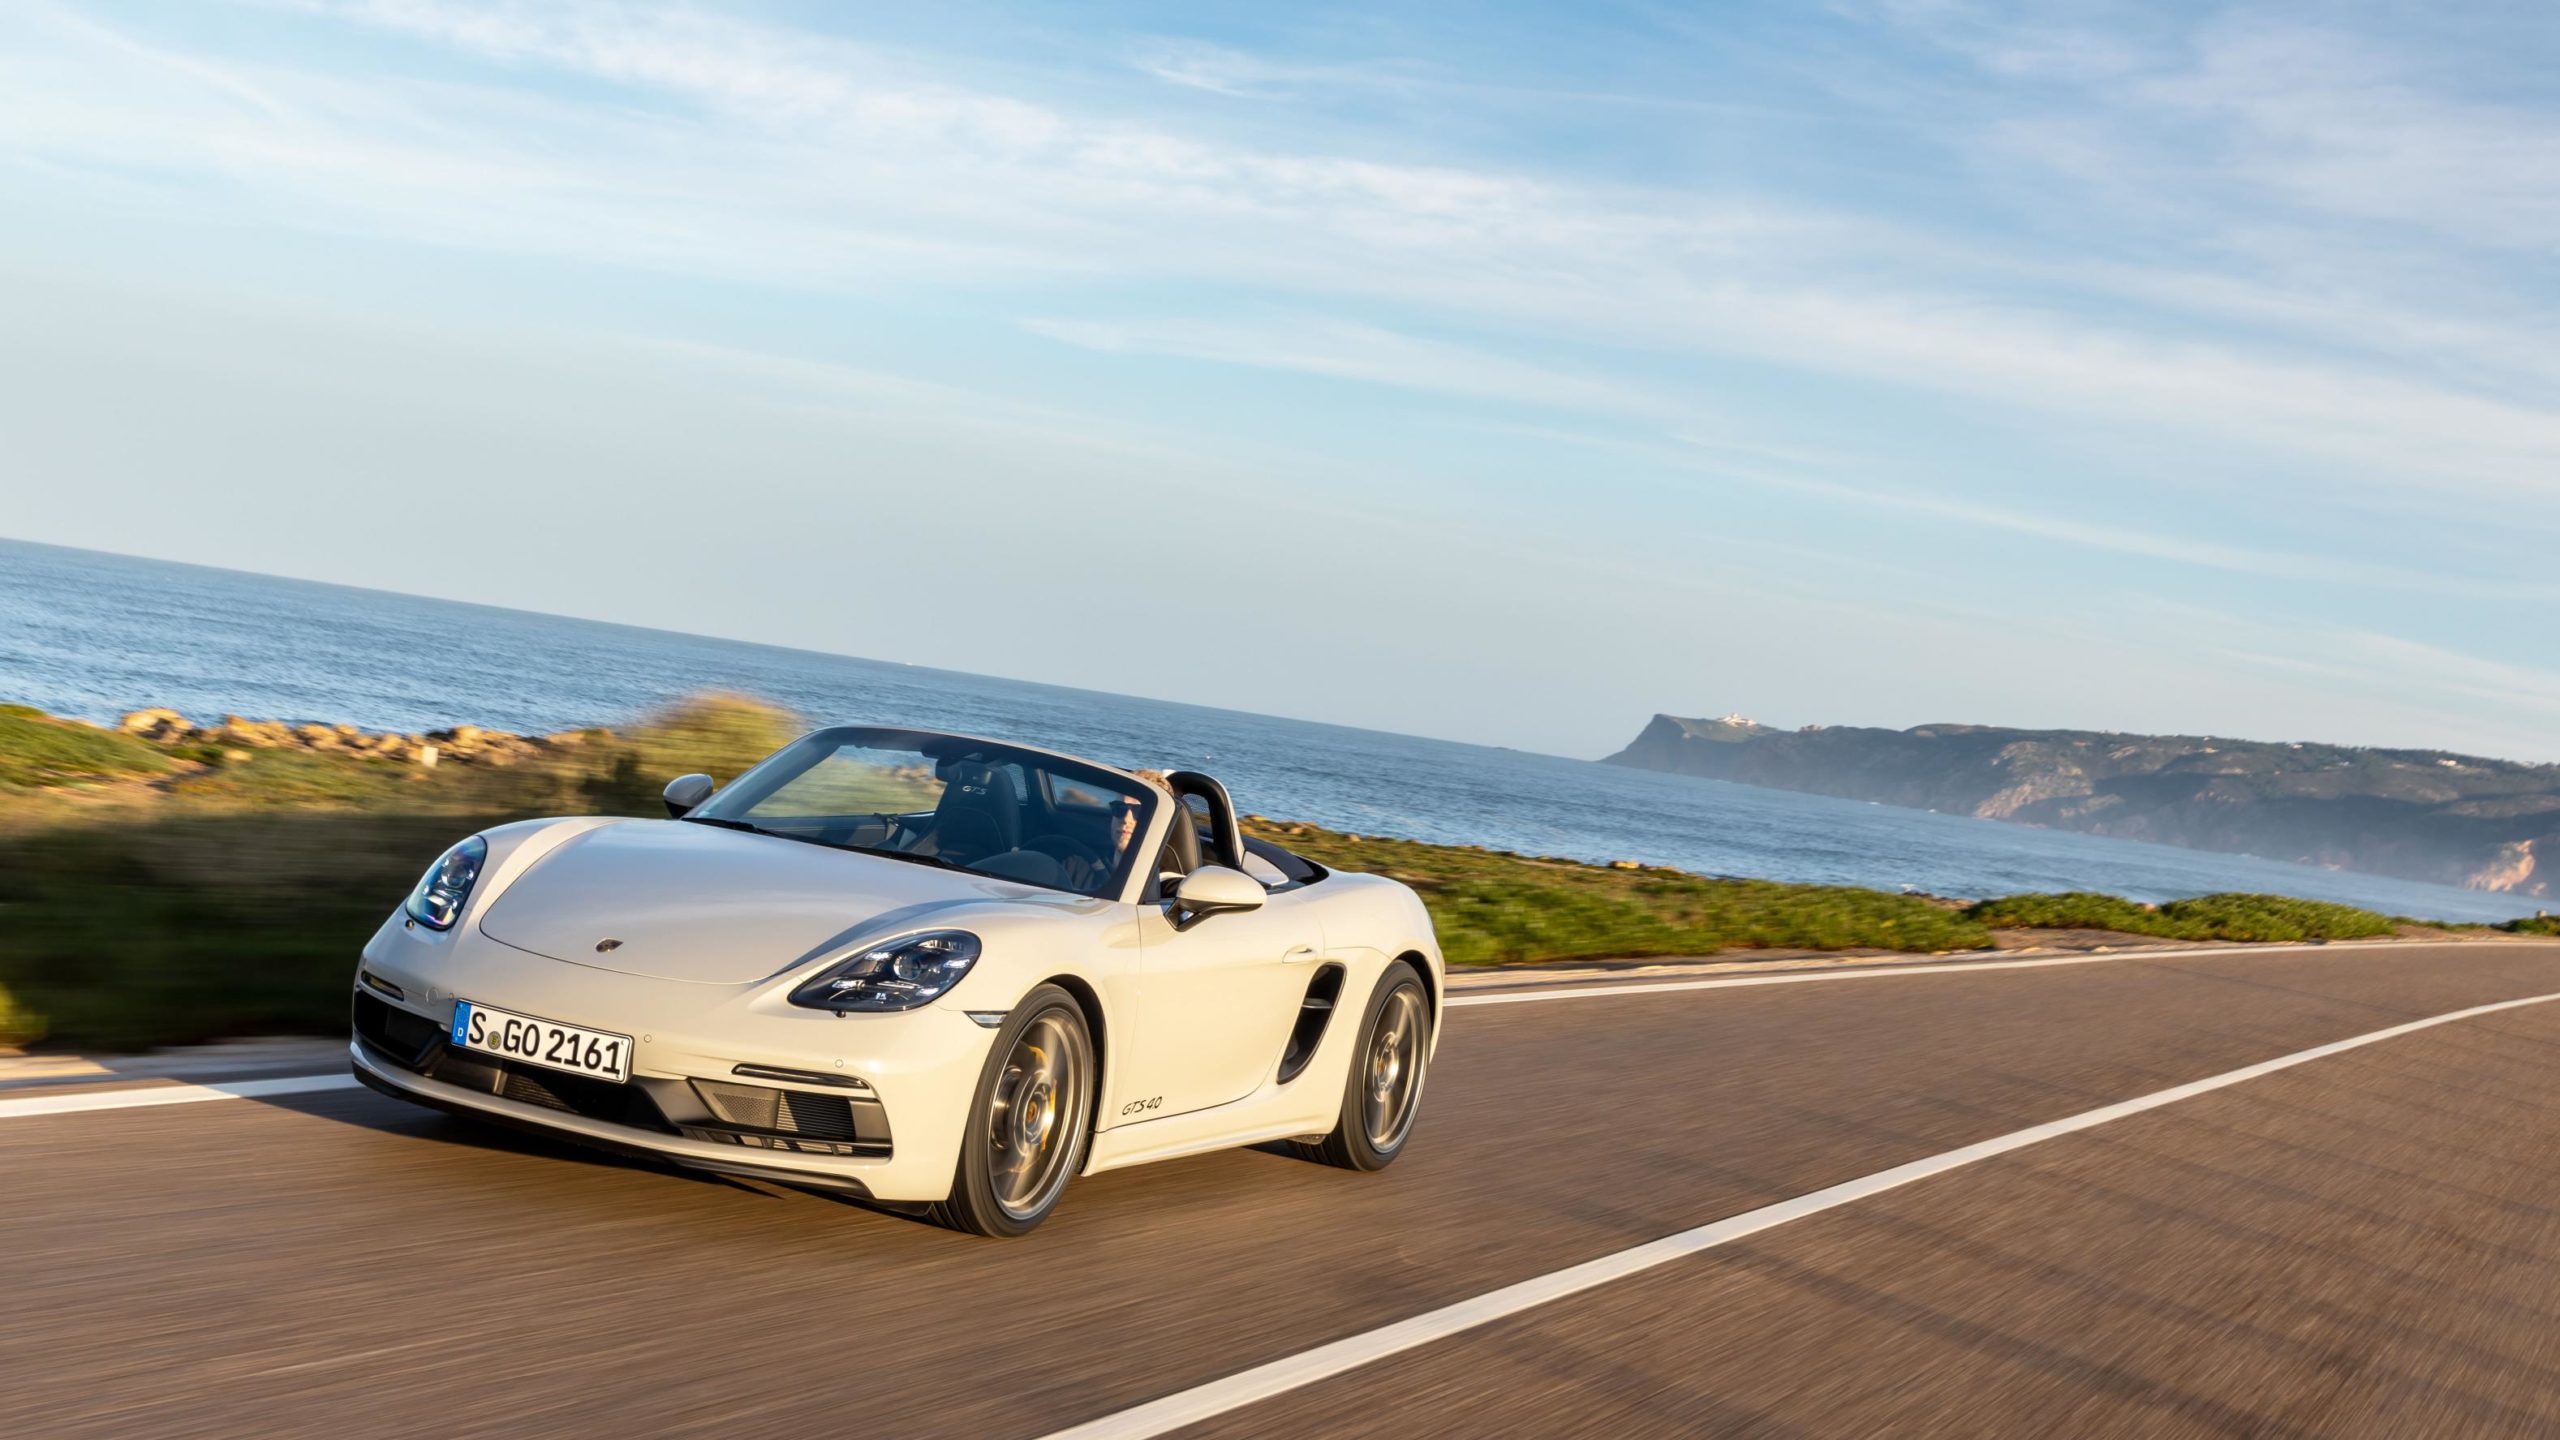 Porsche amplía la garantía de sus vehículos 3 meses